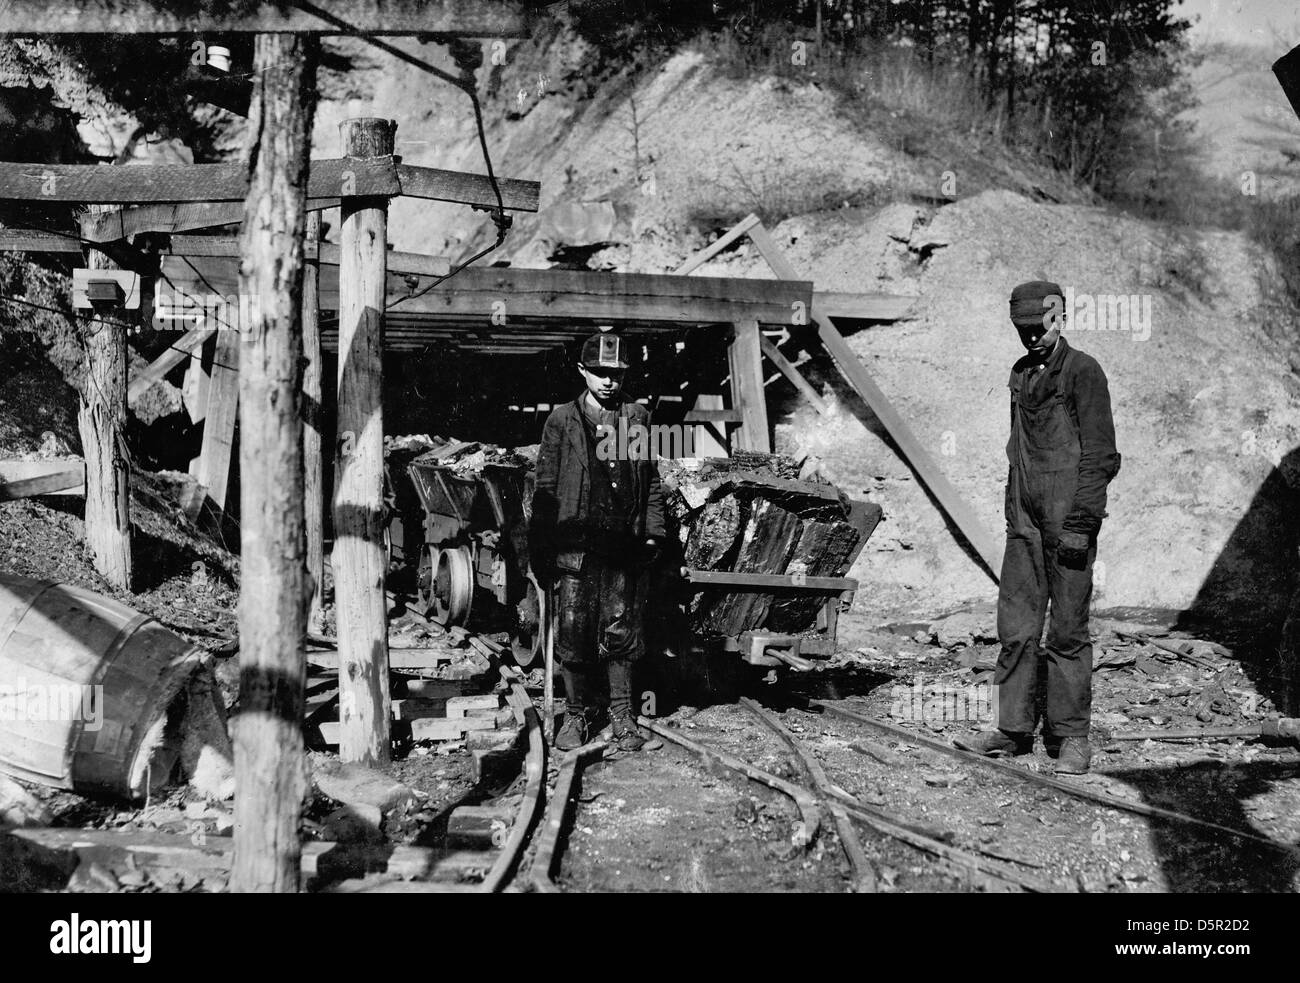 Harte Arbeit und gefährlich für einen jungen. James O'Dell, ein Schmierer und Kupplung auf den Zechen der Cross Mountain Mine, Knoxville Iron Co., in der Nähe von Coal Creek, Tenn James wurde dort vier Monate. Hilft schieben diese stark belastete Autos. Scheint etwa 12 oder 13 Jahre alt sein. Ort: Coal Creek, Tennessee. Kinderarbeit, um 1910 Stockfoto